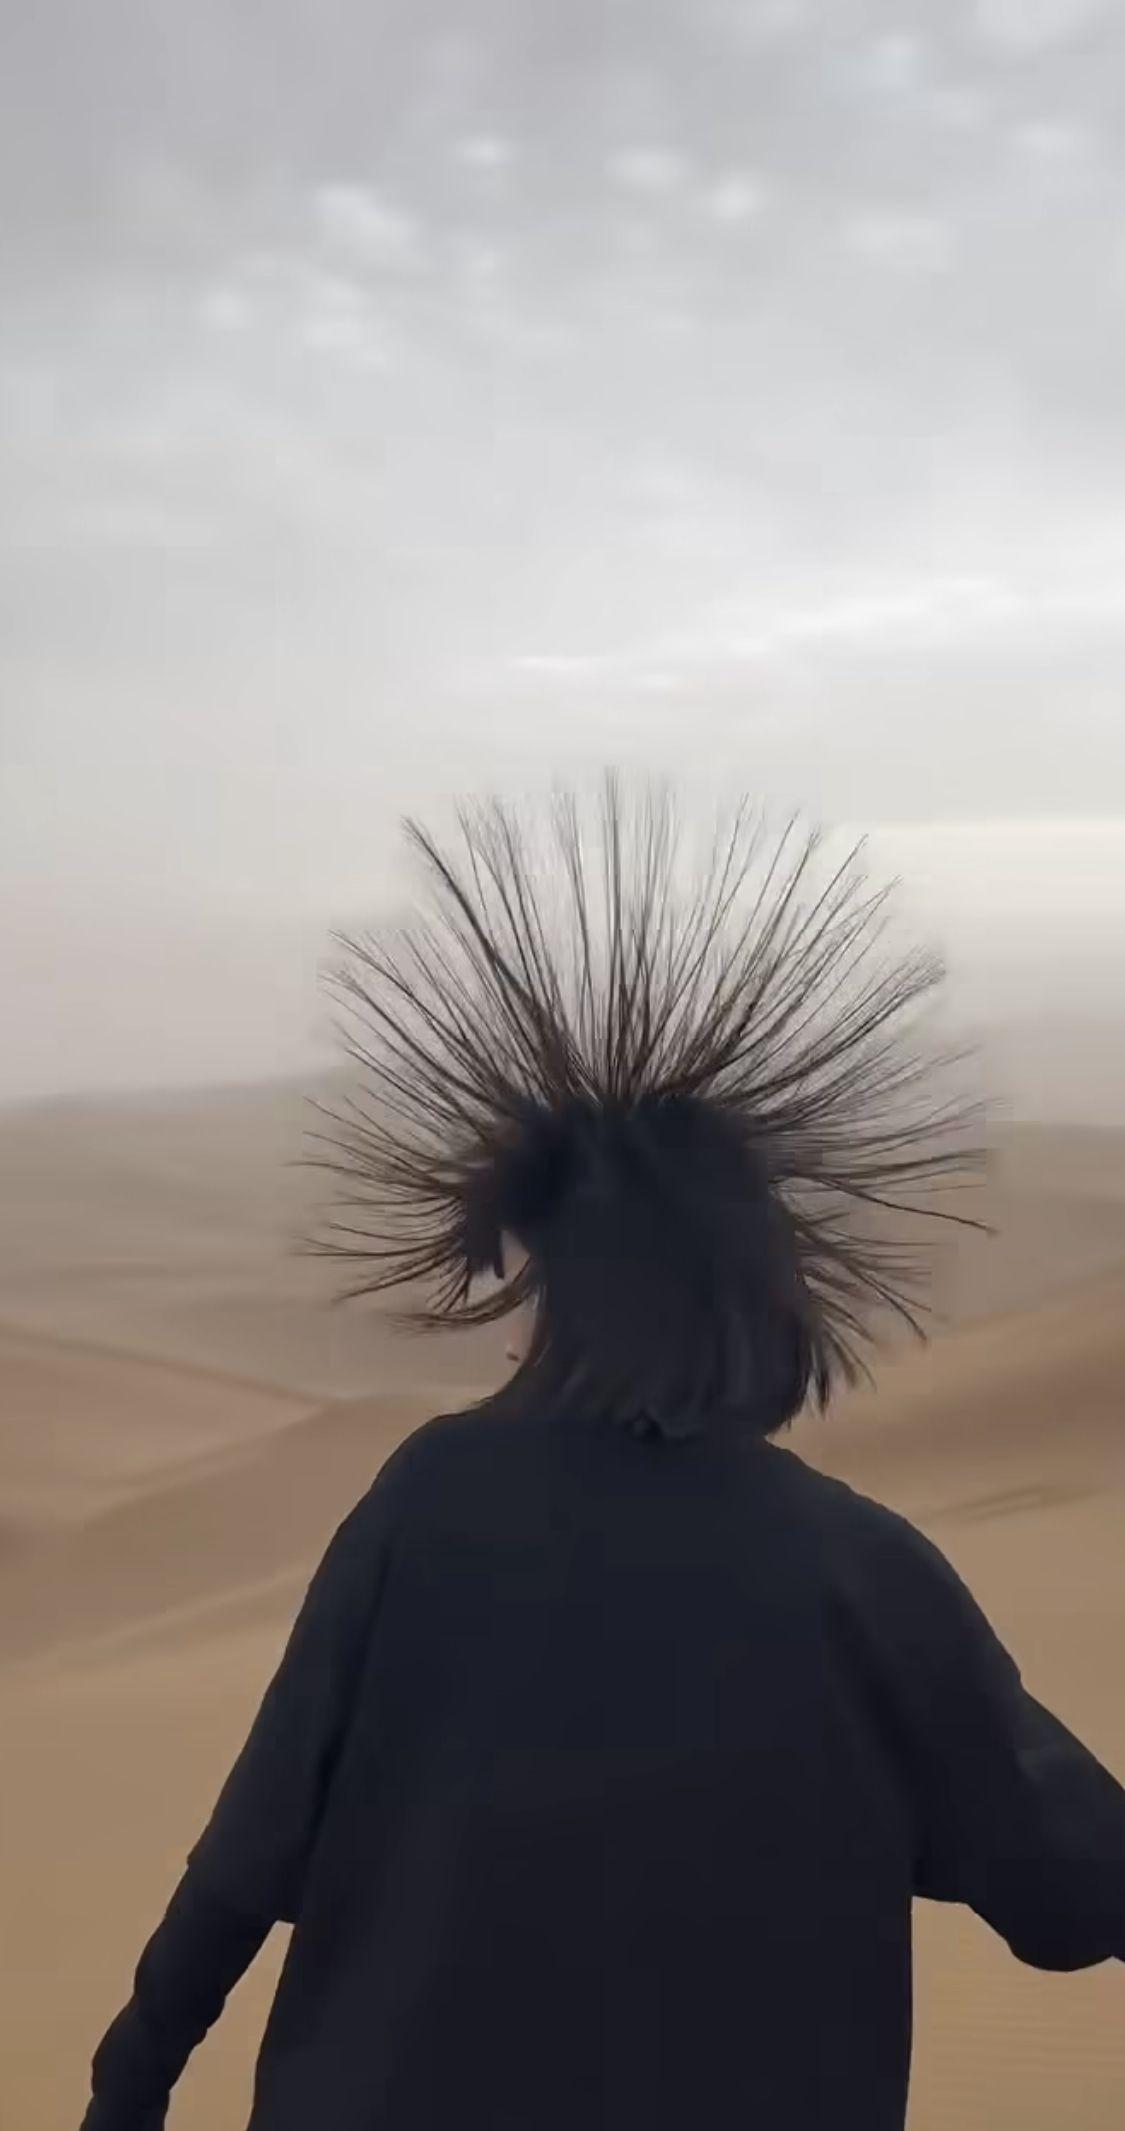 사막에서 머리카락이 솟으면 도망가야하는 이유